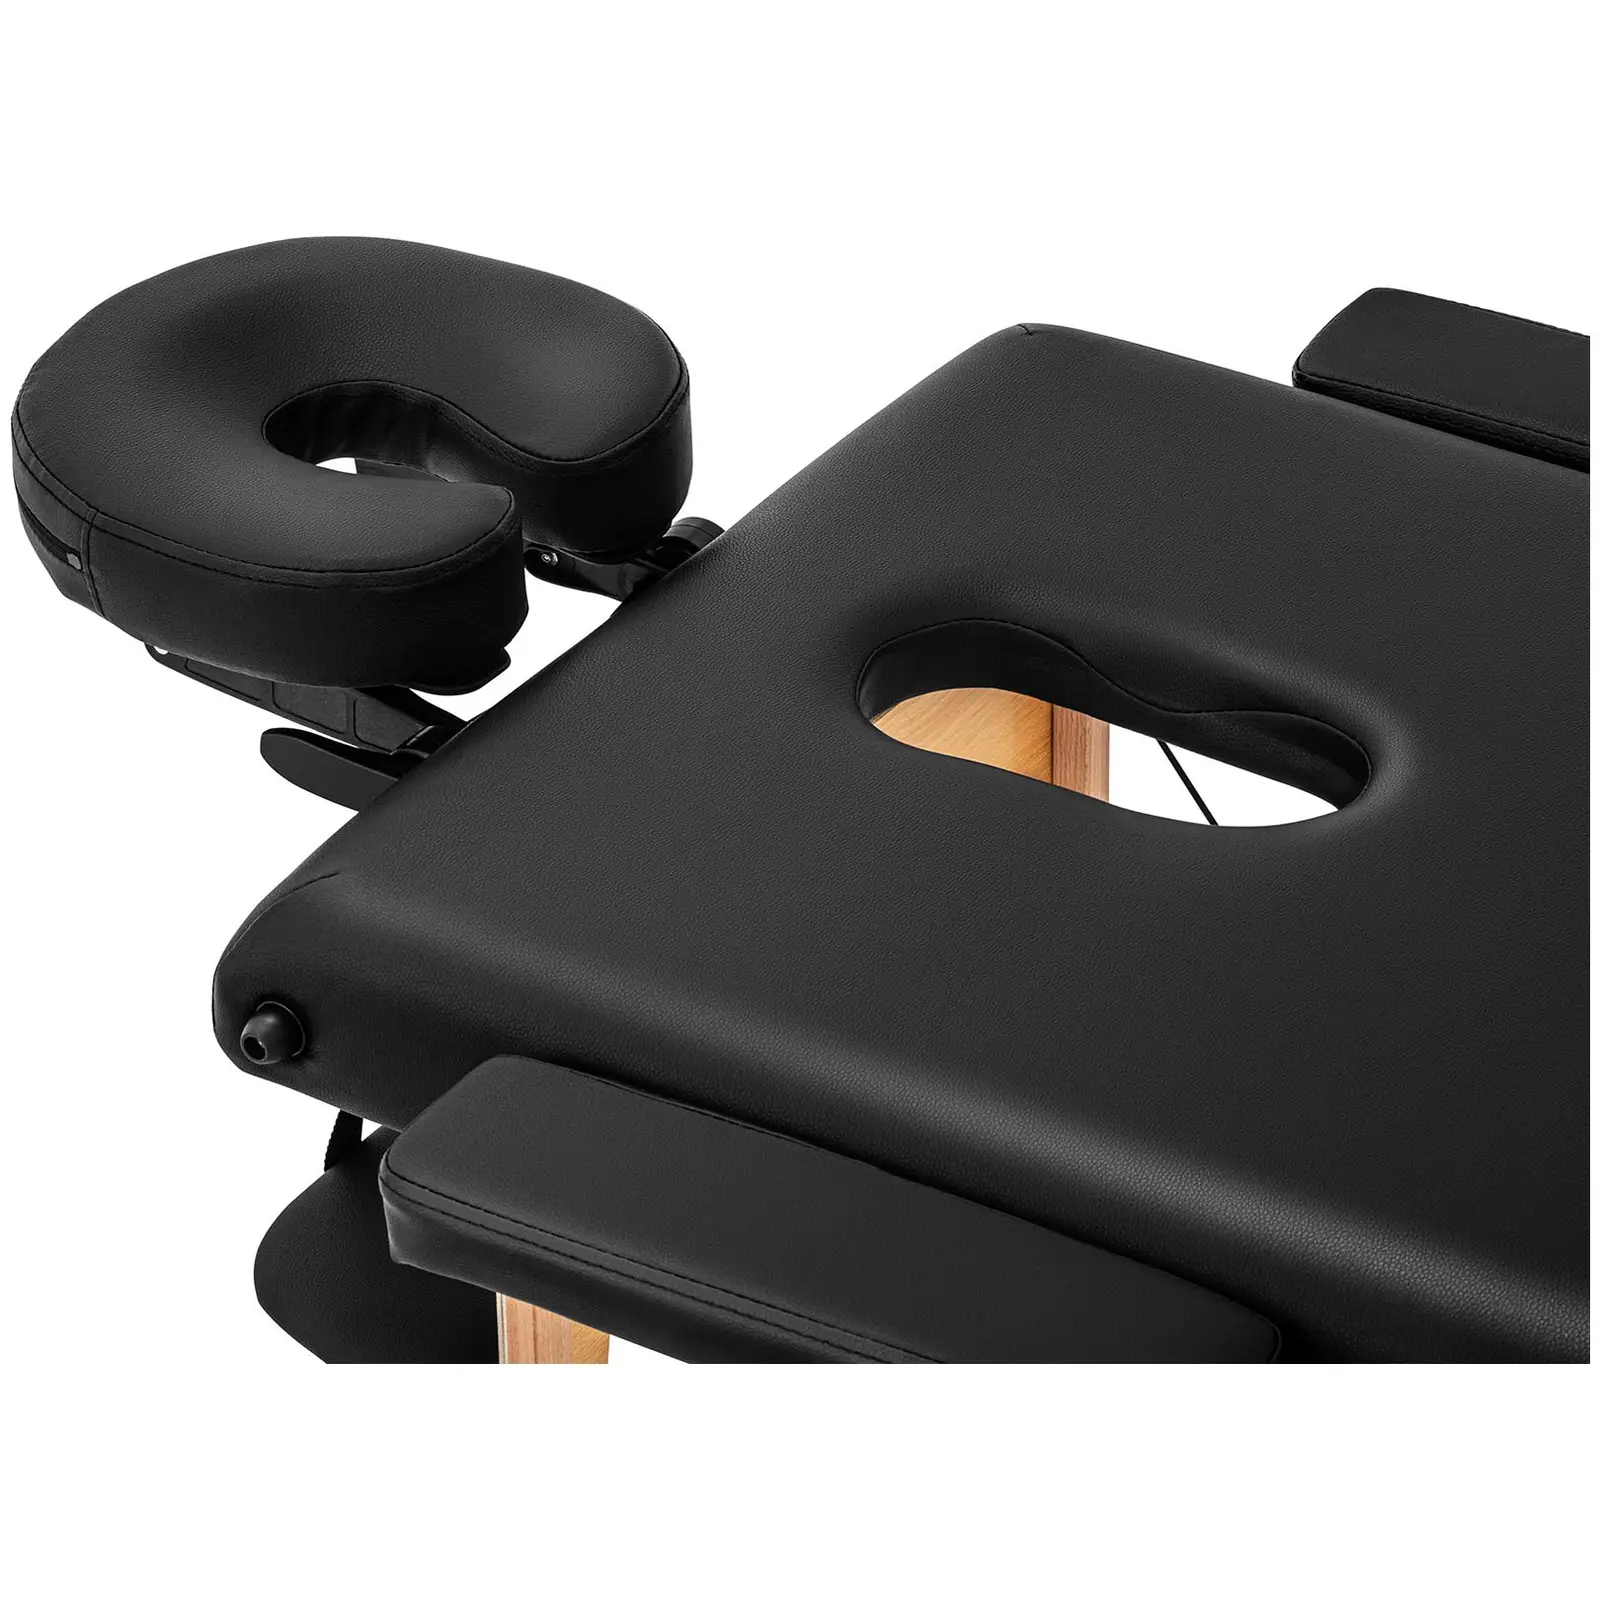 B-varer Sammenleggbart massasjebord - ekstra bredt (70 cm) - skråstilt fotstøtte - bøketre - svart